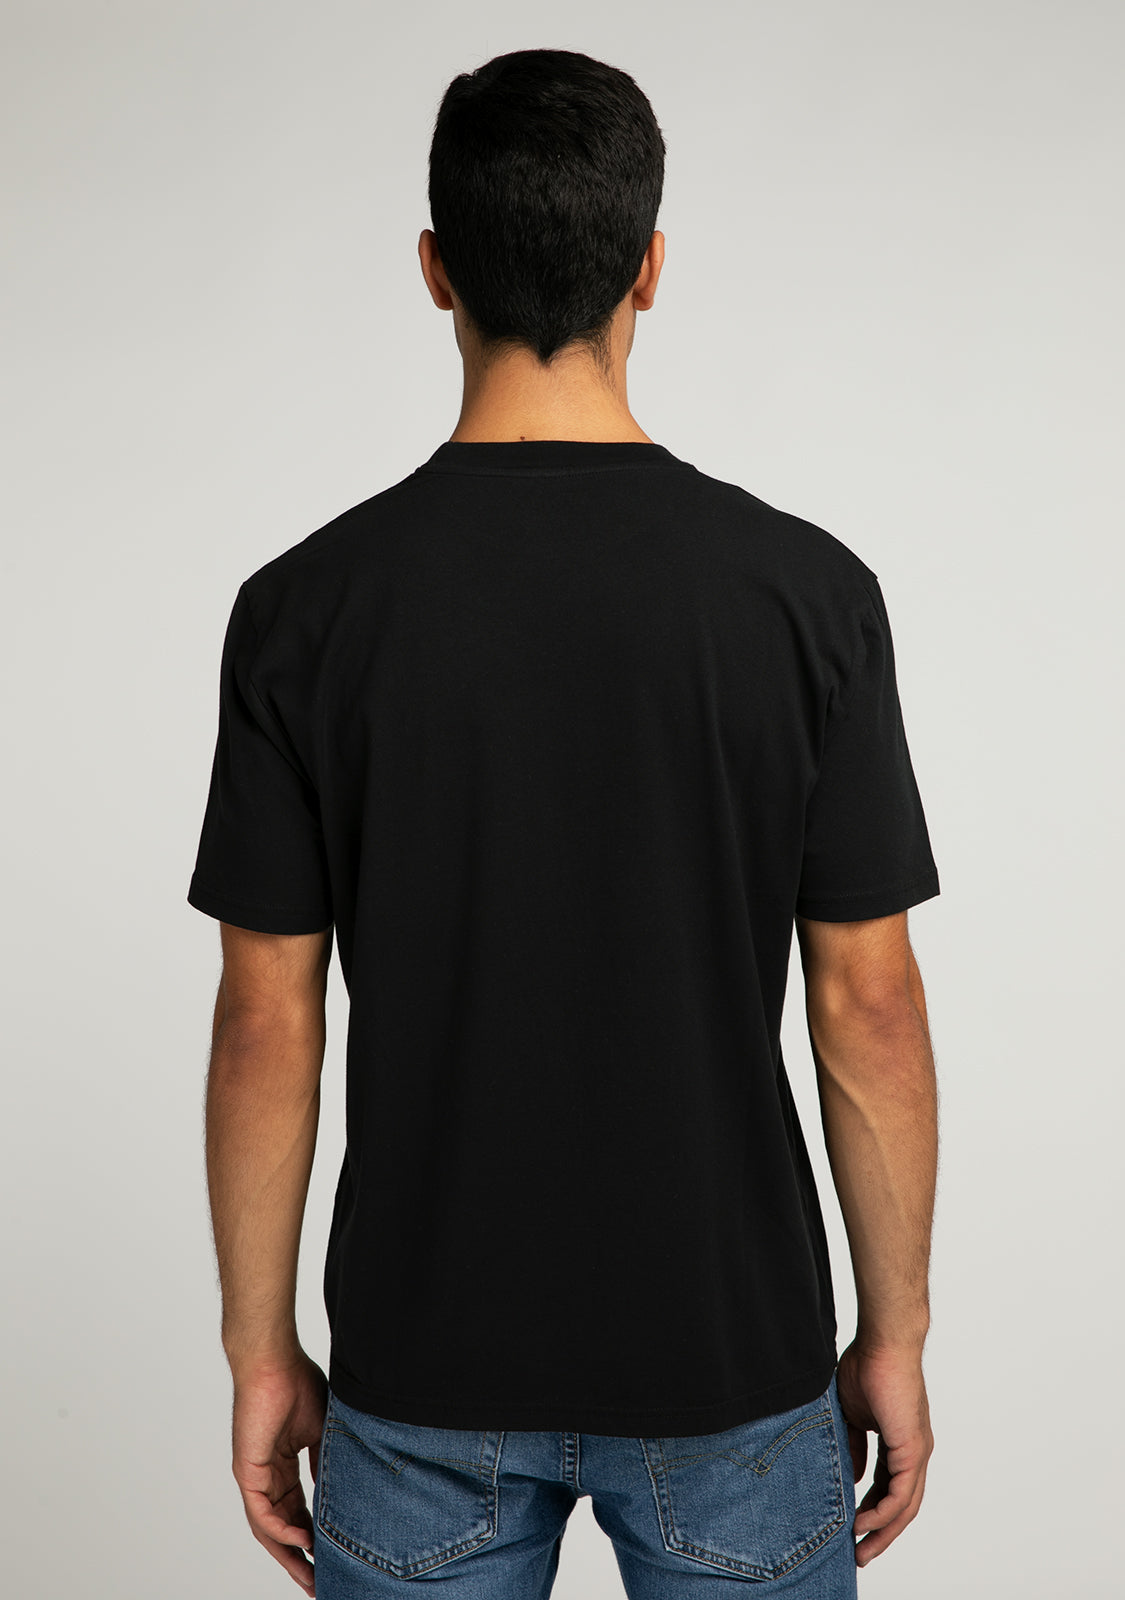 T-Shirt D.Franklin Capitals Black